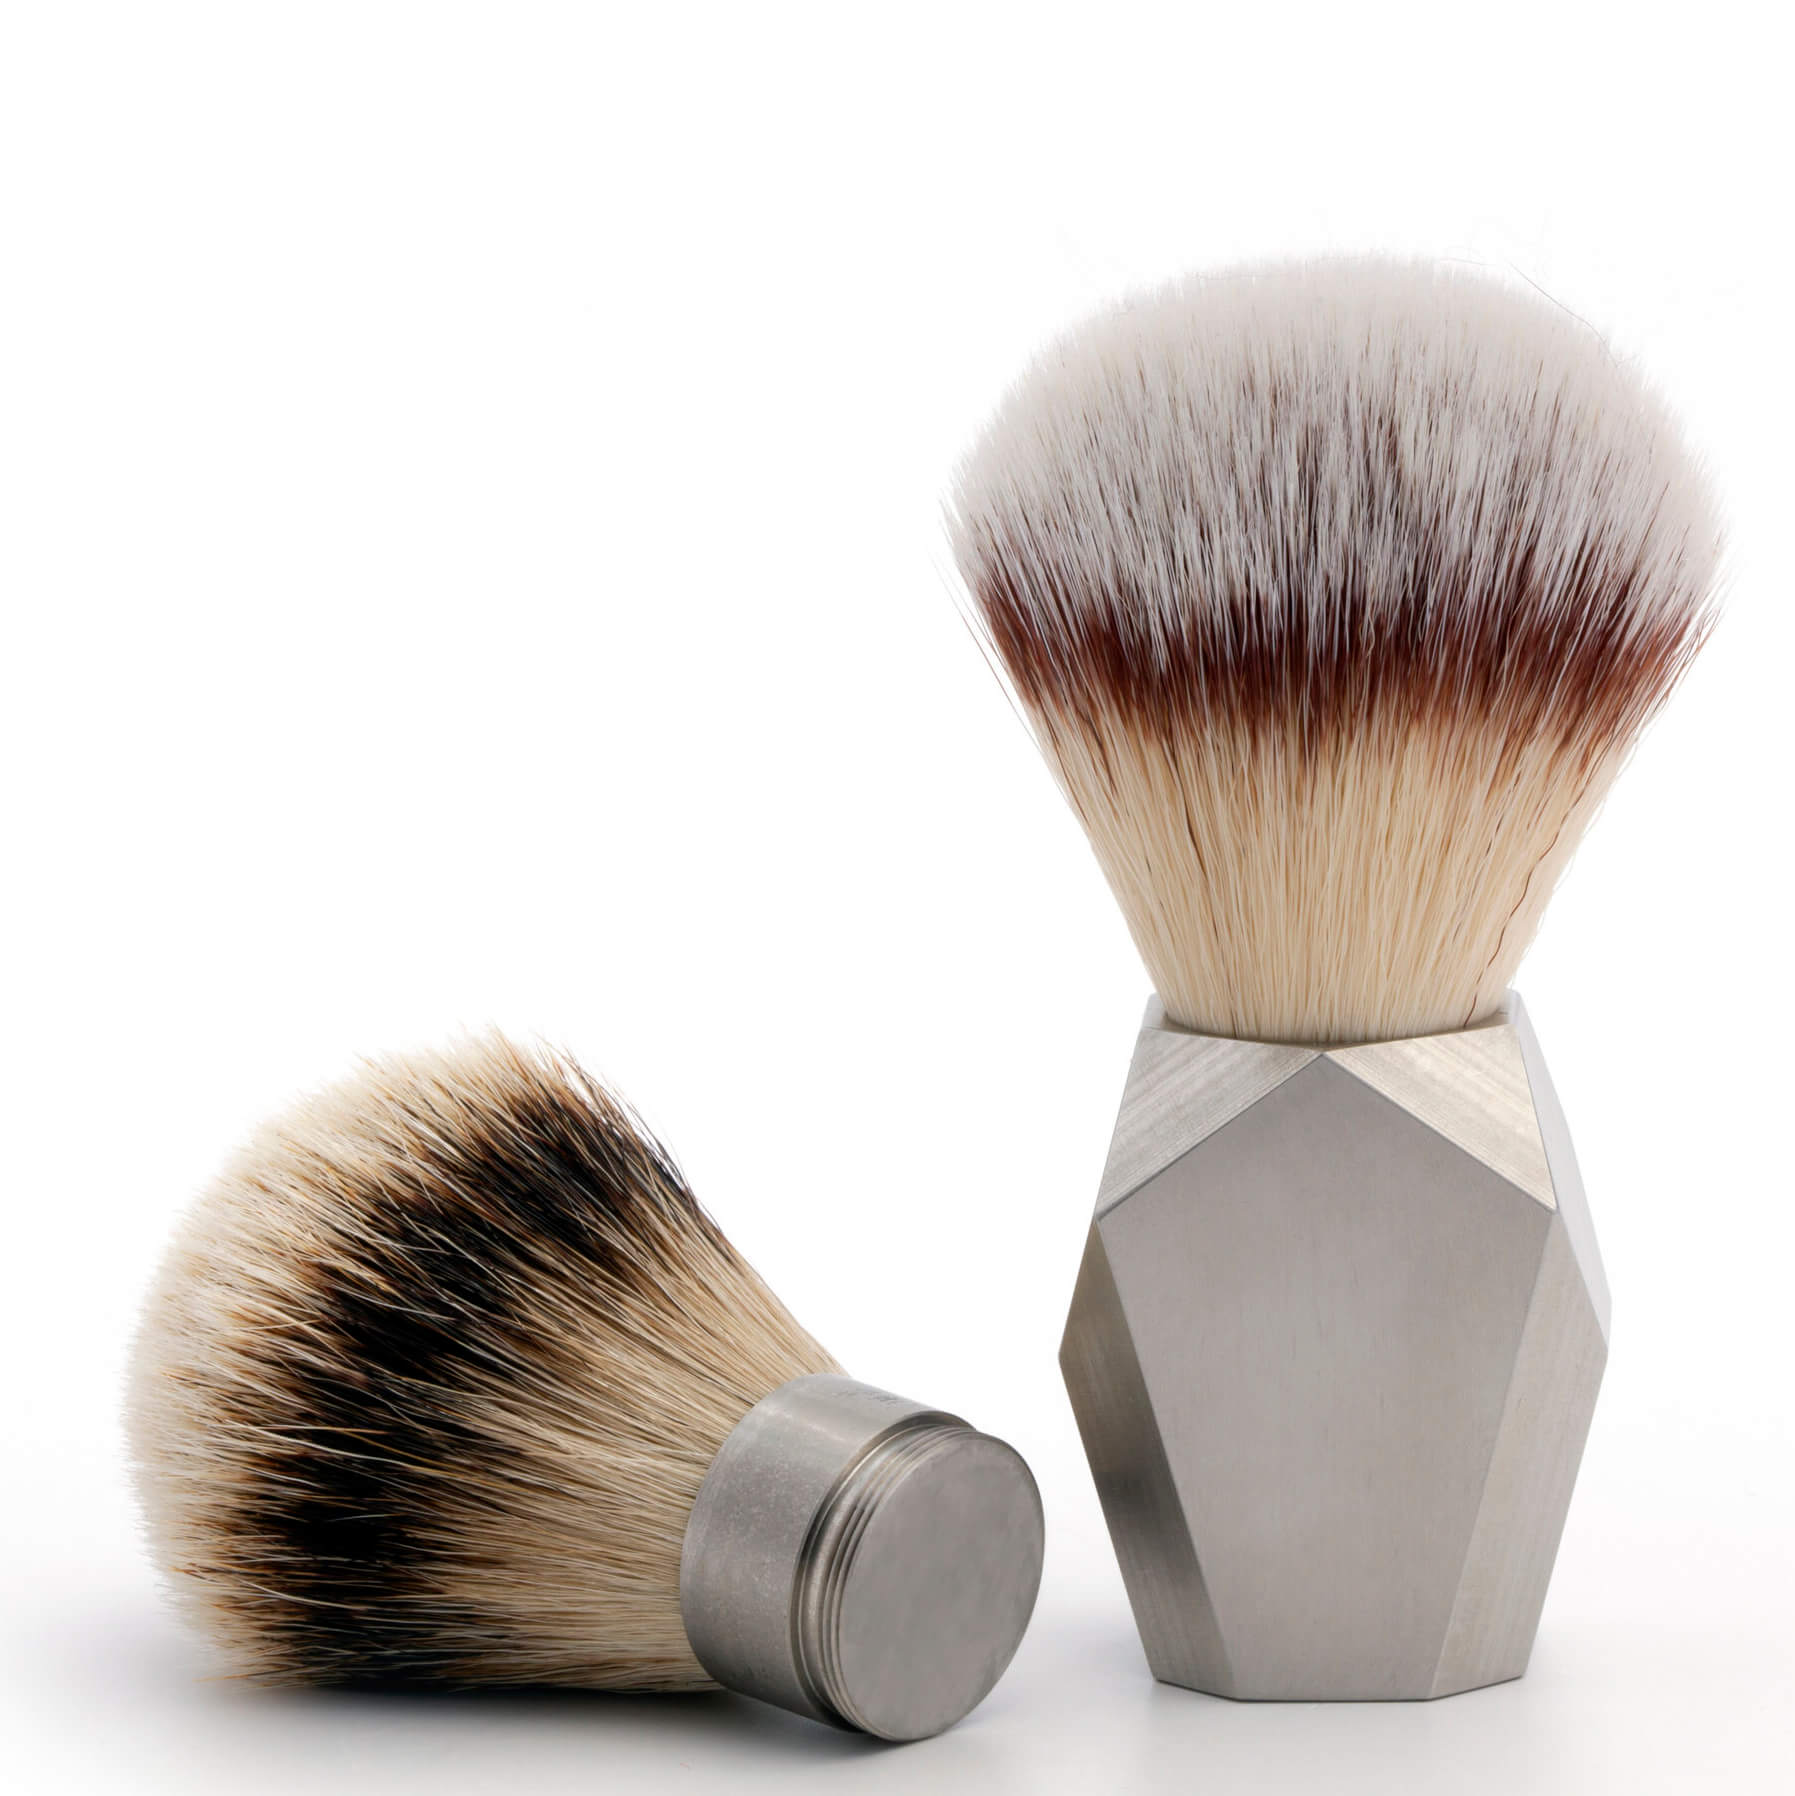 Rex Deco Stainless Steel Shaving Brush